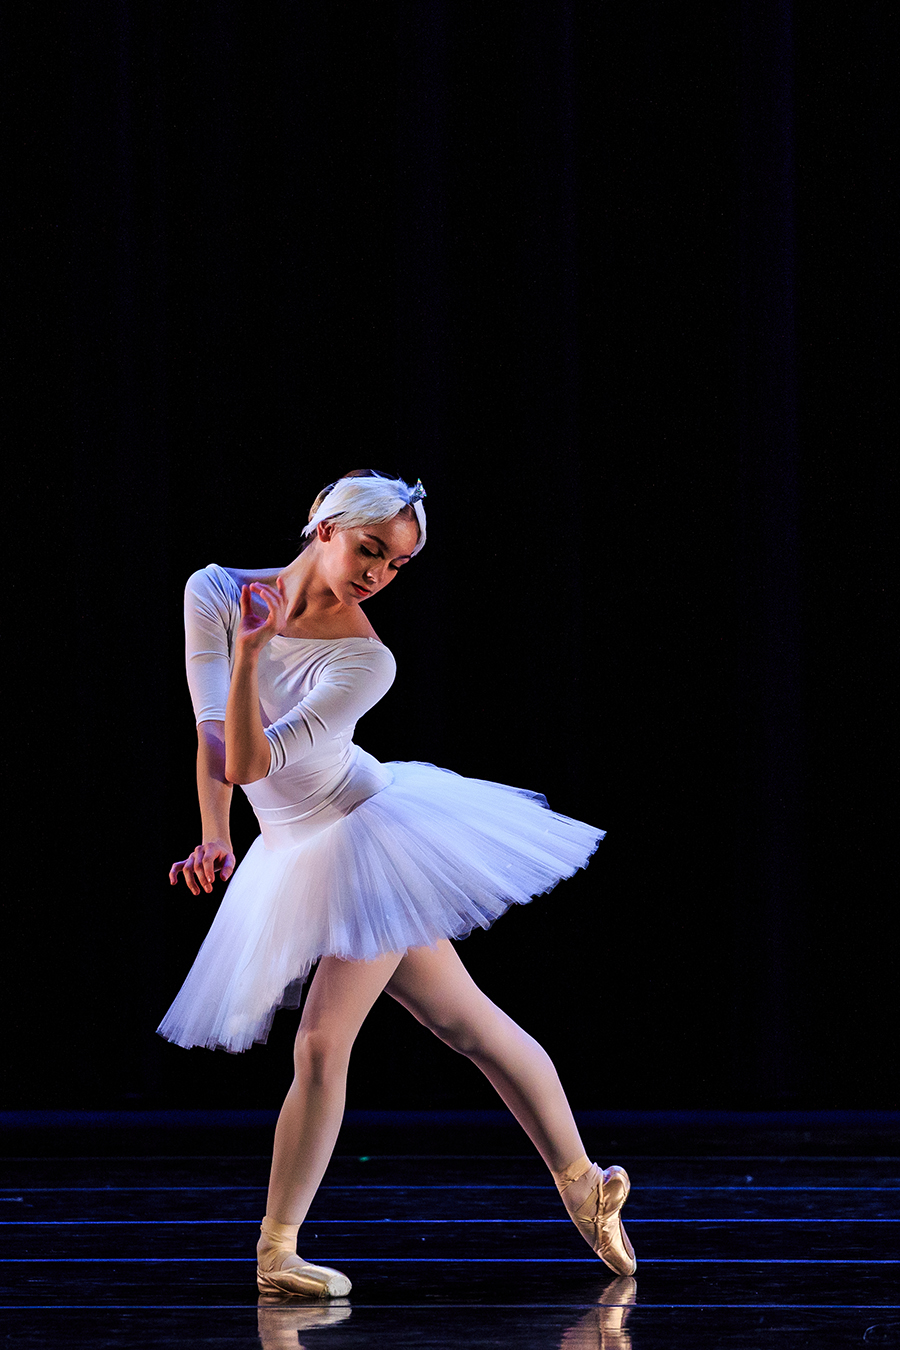 Trainee Ballet Dancer Performing on Stage in Swan Lake in Utah